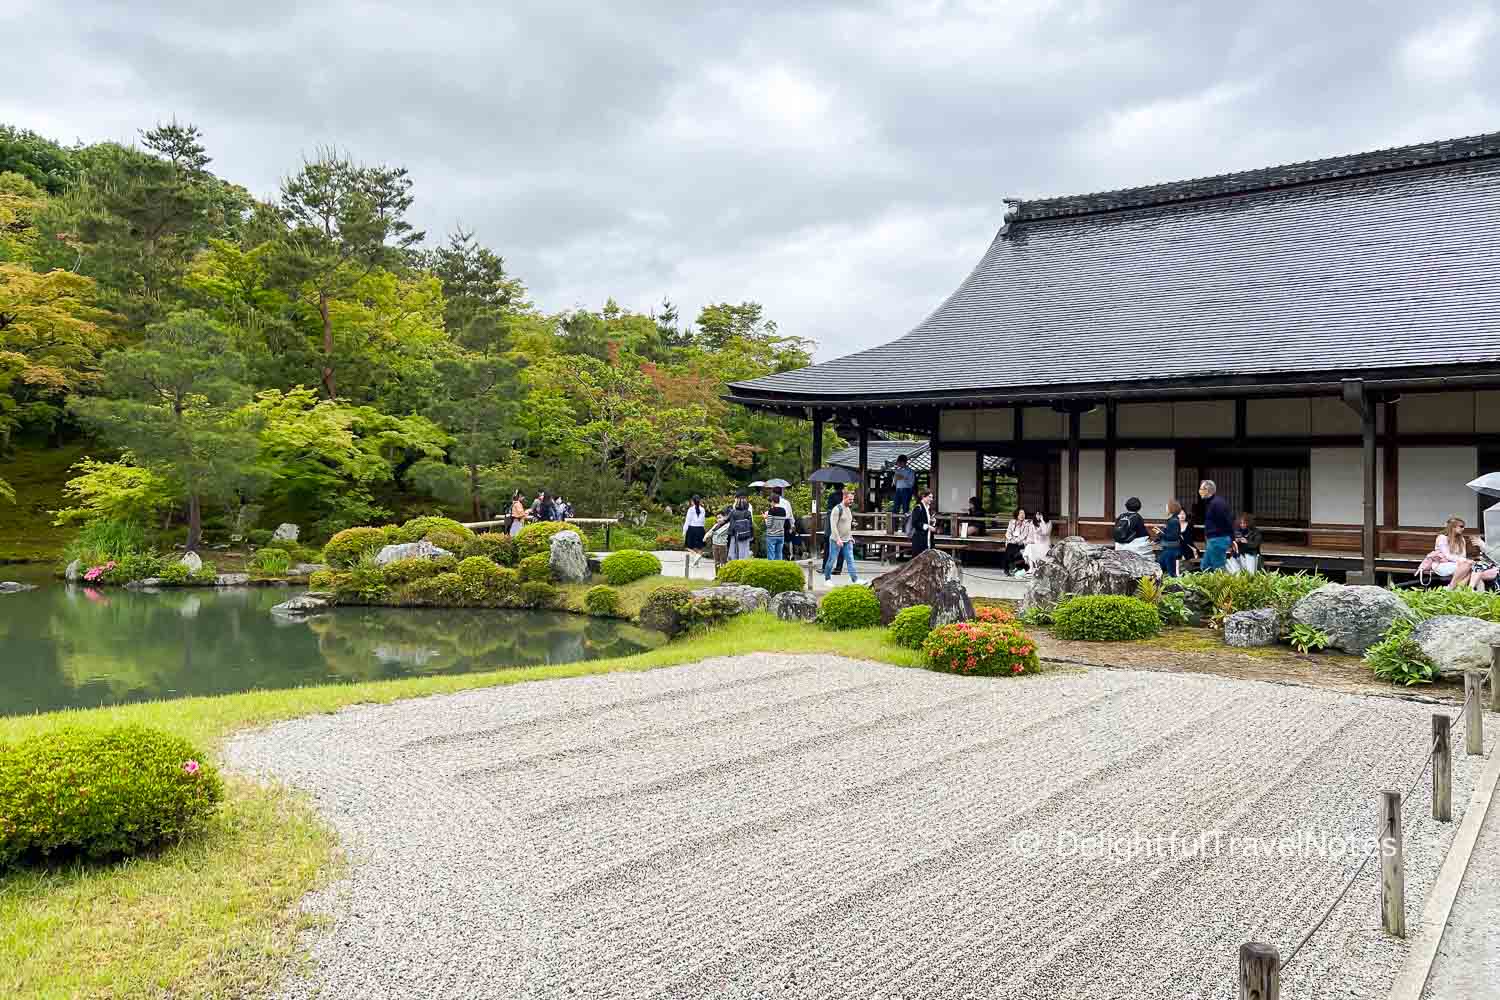 busy temple grounds at Tenryu-ji in Arashiyama, Kyoto.